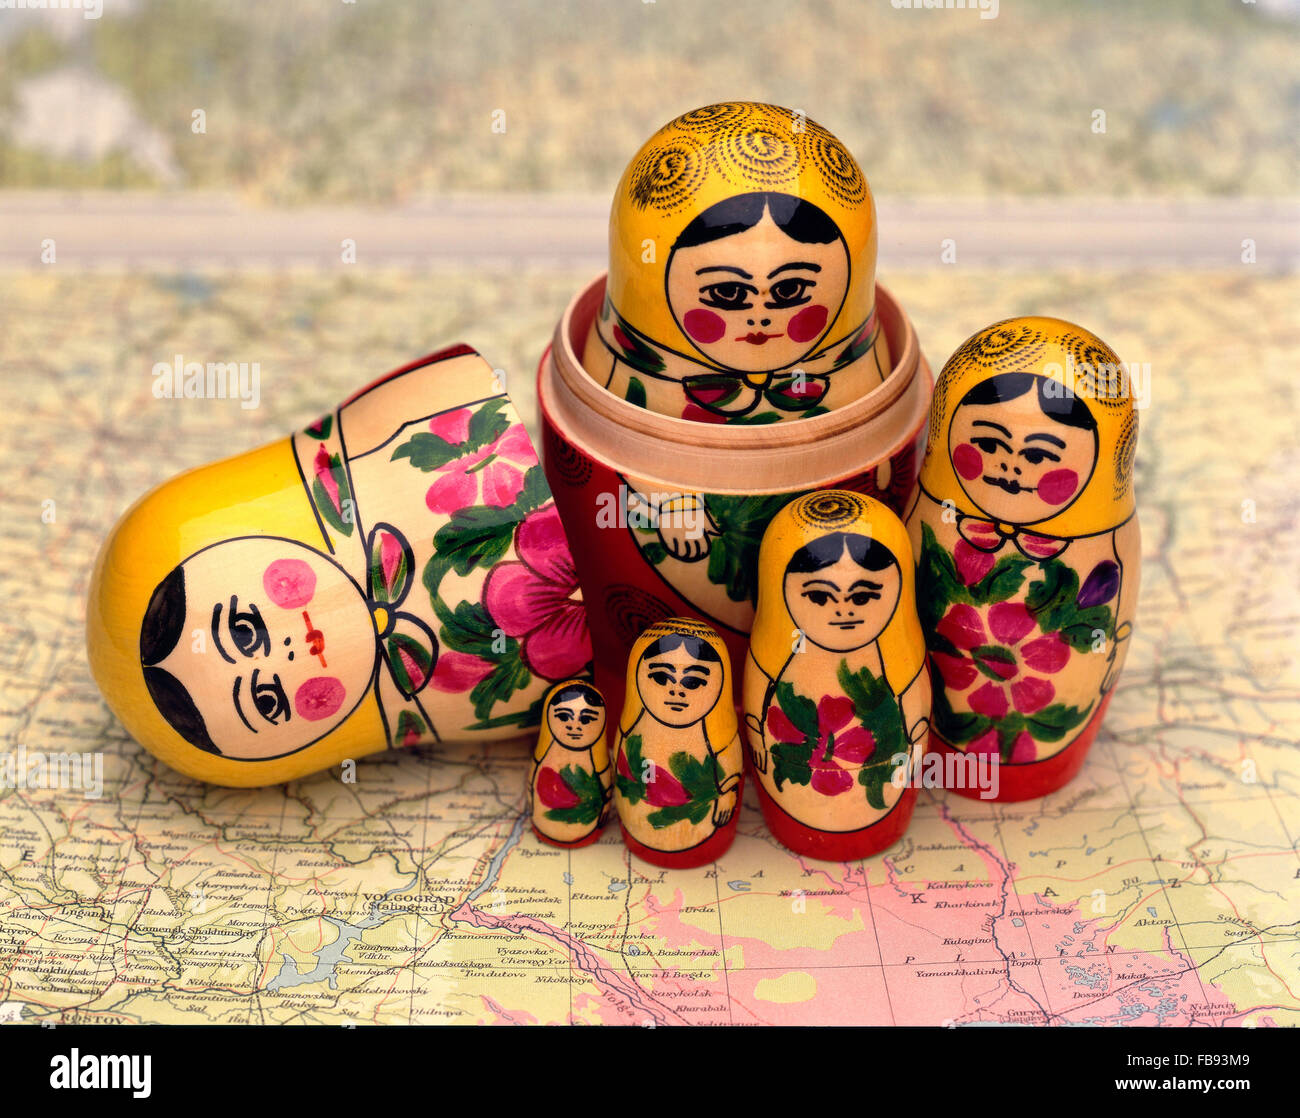 Eine hölzerne Matroschka-Puppe, auch bekannt als eine russische Verschachtelung Puppe auf einer Karte von Russland Stockfoto